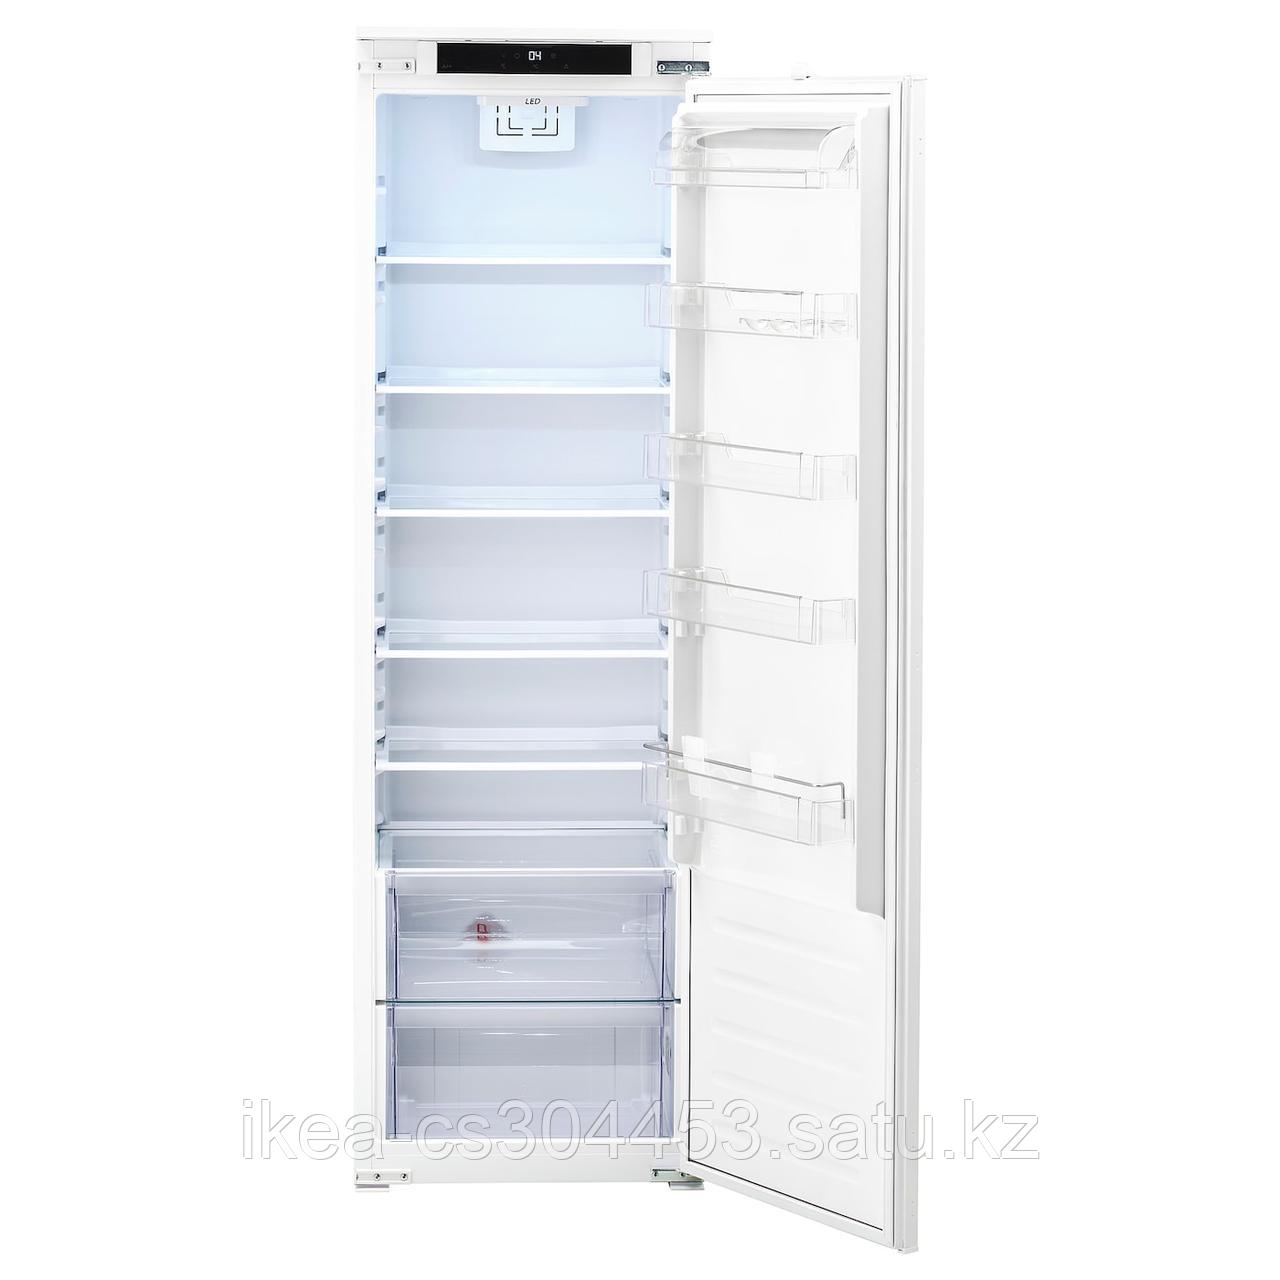 FROSTIG ФРОСТИГ Встраиваемый холодильник А+, белый,